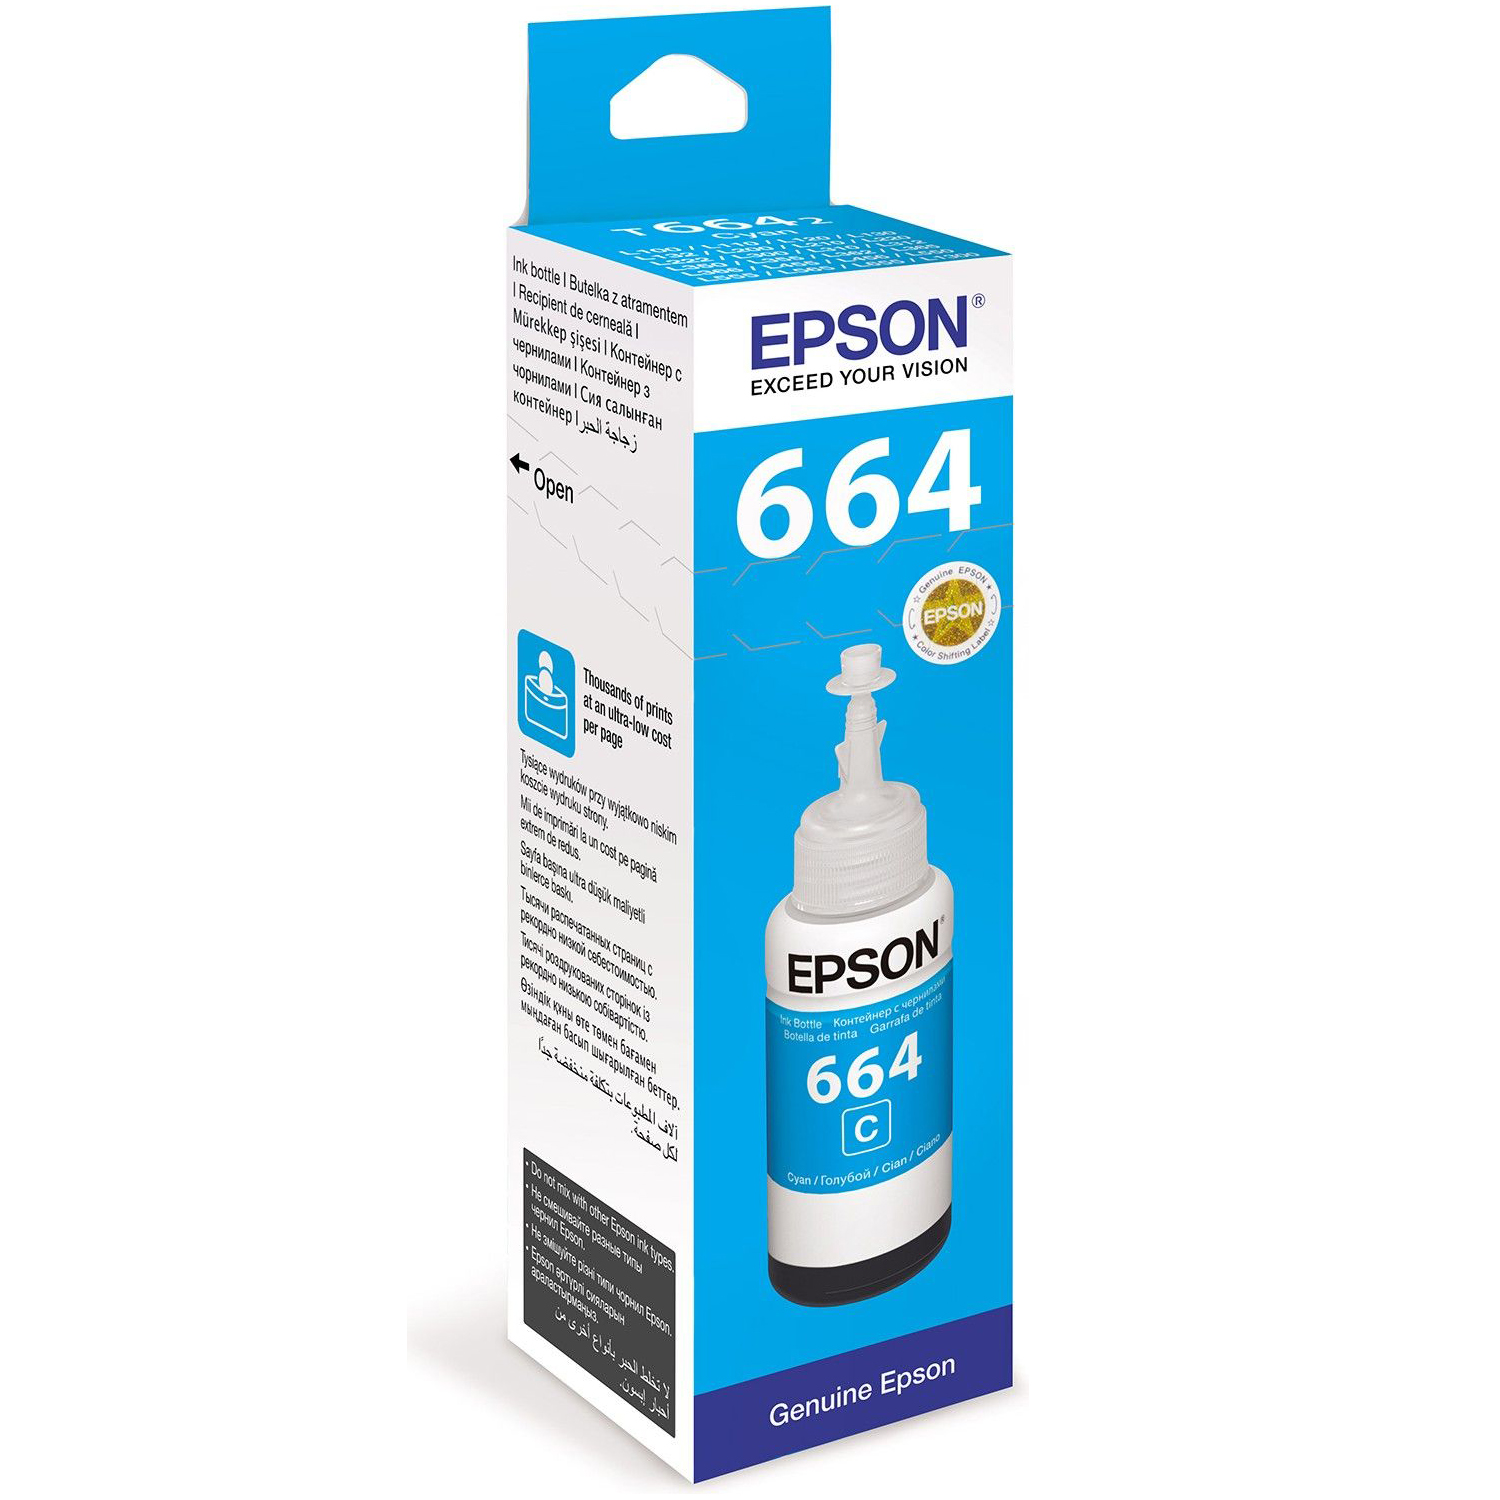 Epson Ink 664200 Cyan Ink Bottle 70ml